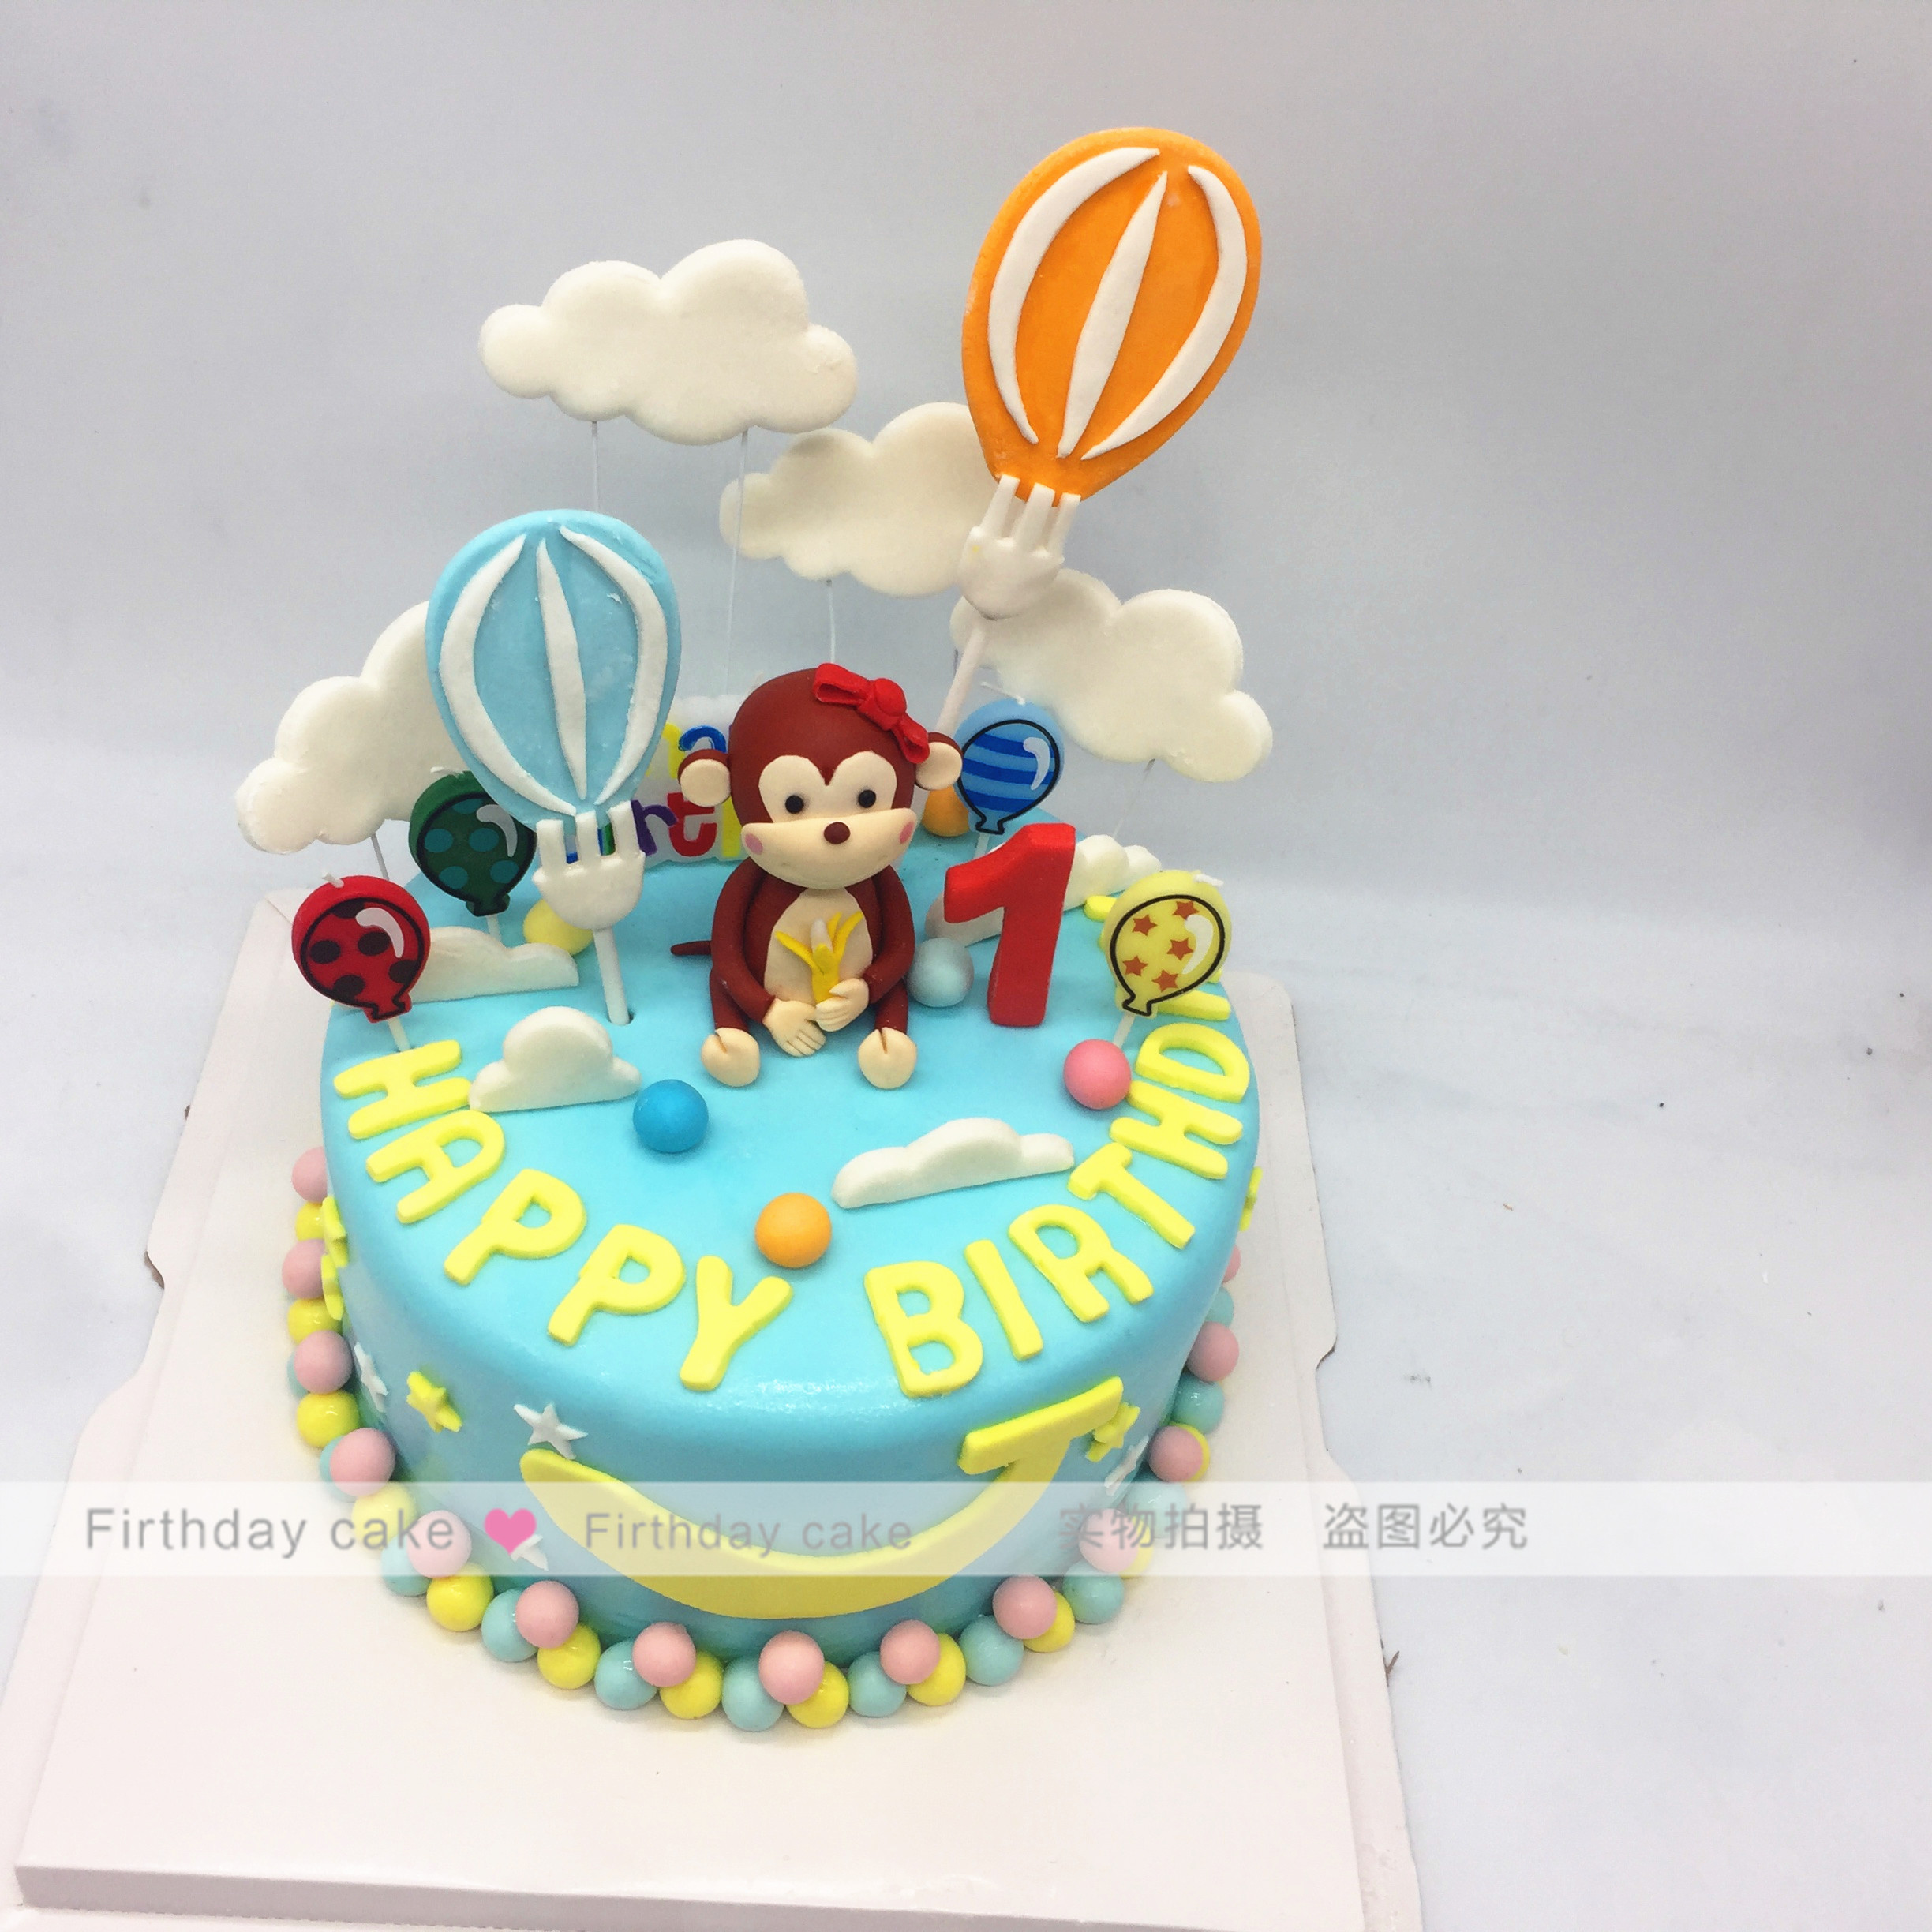 儿童周岁蛋糕 定制创意蛋糕 小猴子生日蛋糕北京上海同城翻糖蛋糕